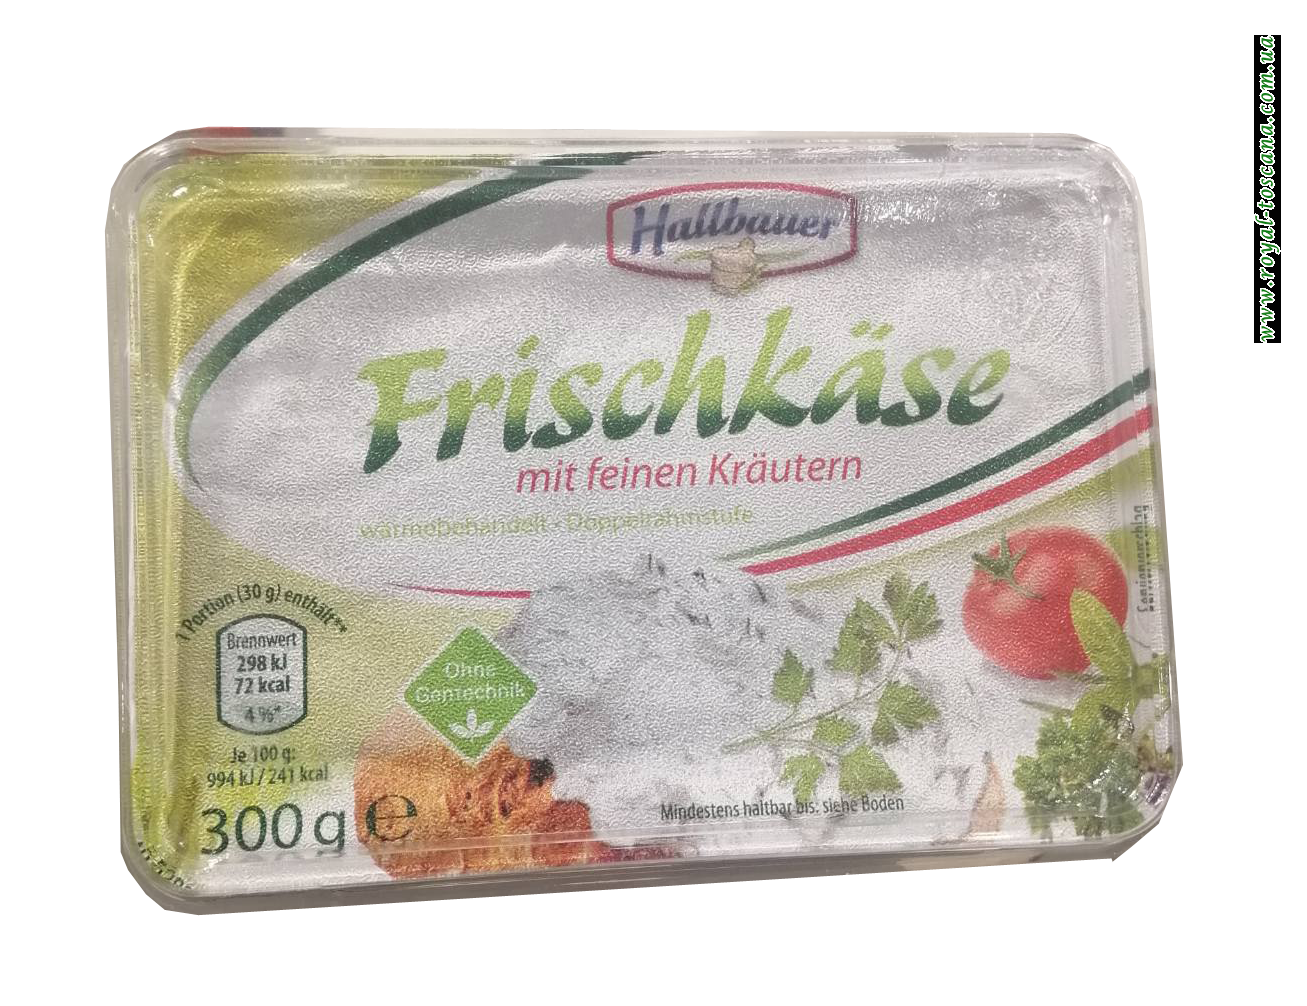 Сыр плавленный Hallbauer Frschkase, 300г